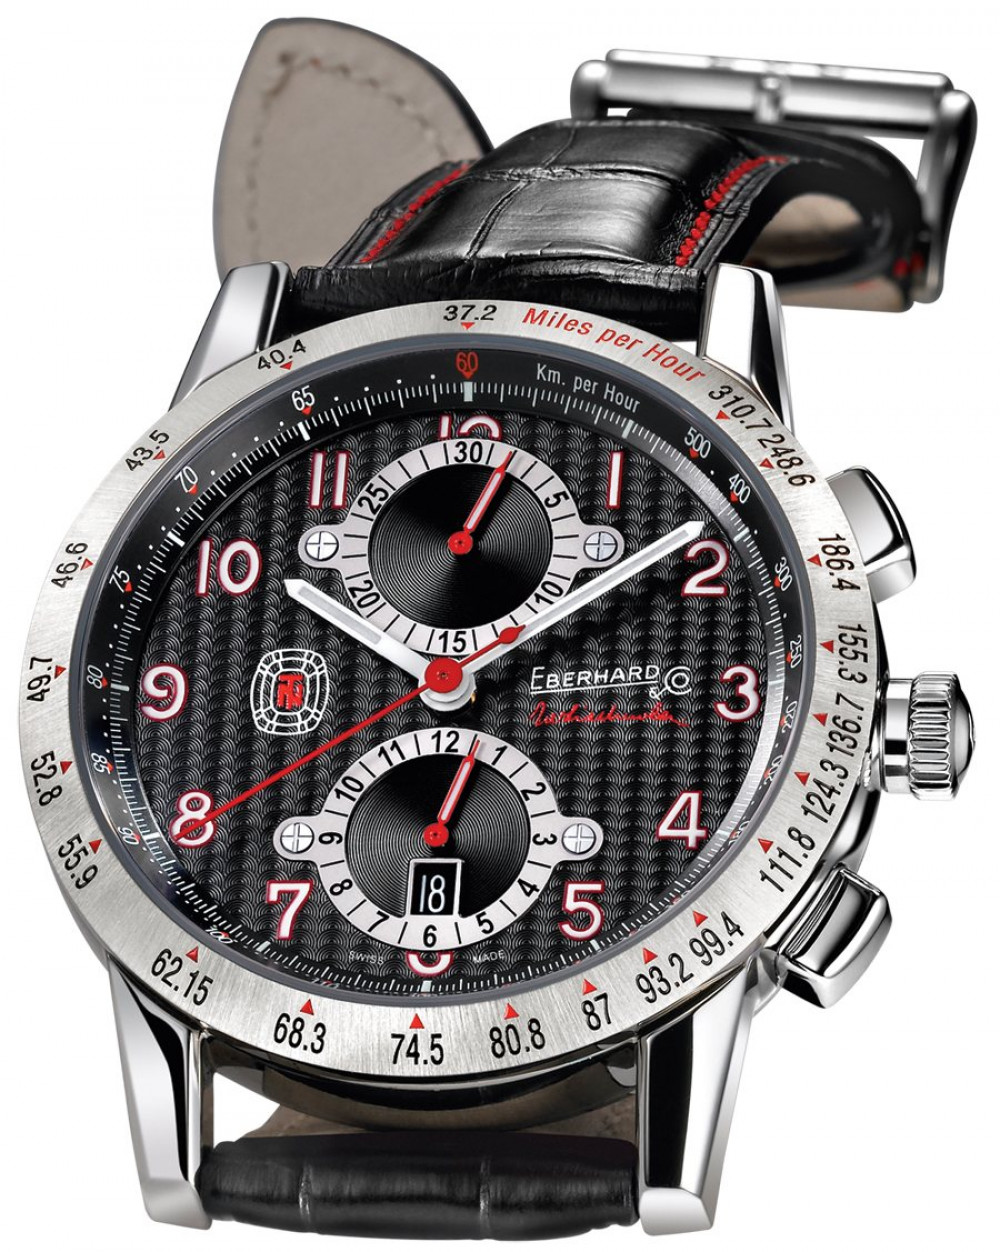 Zegarek firmy Eberhard & Co., model Tazio Nuvolaris Data